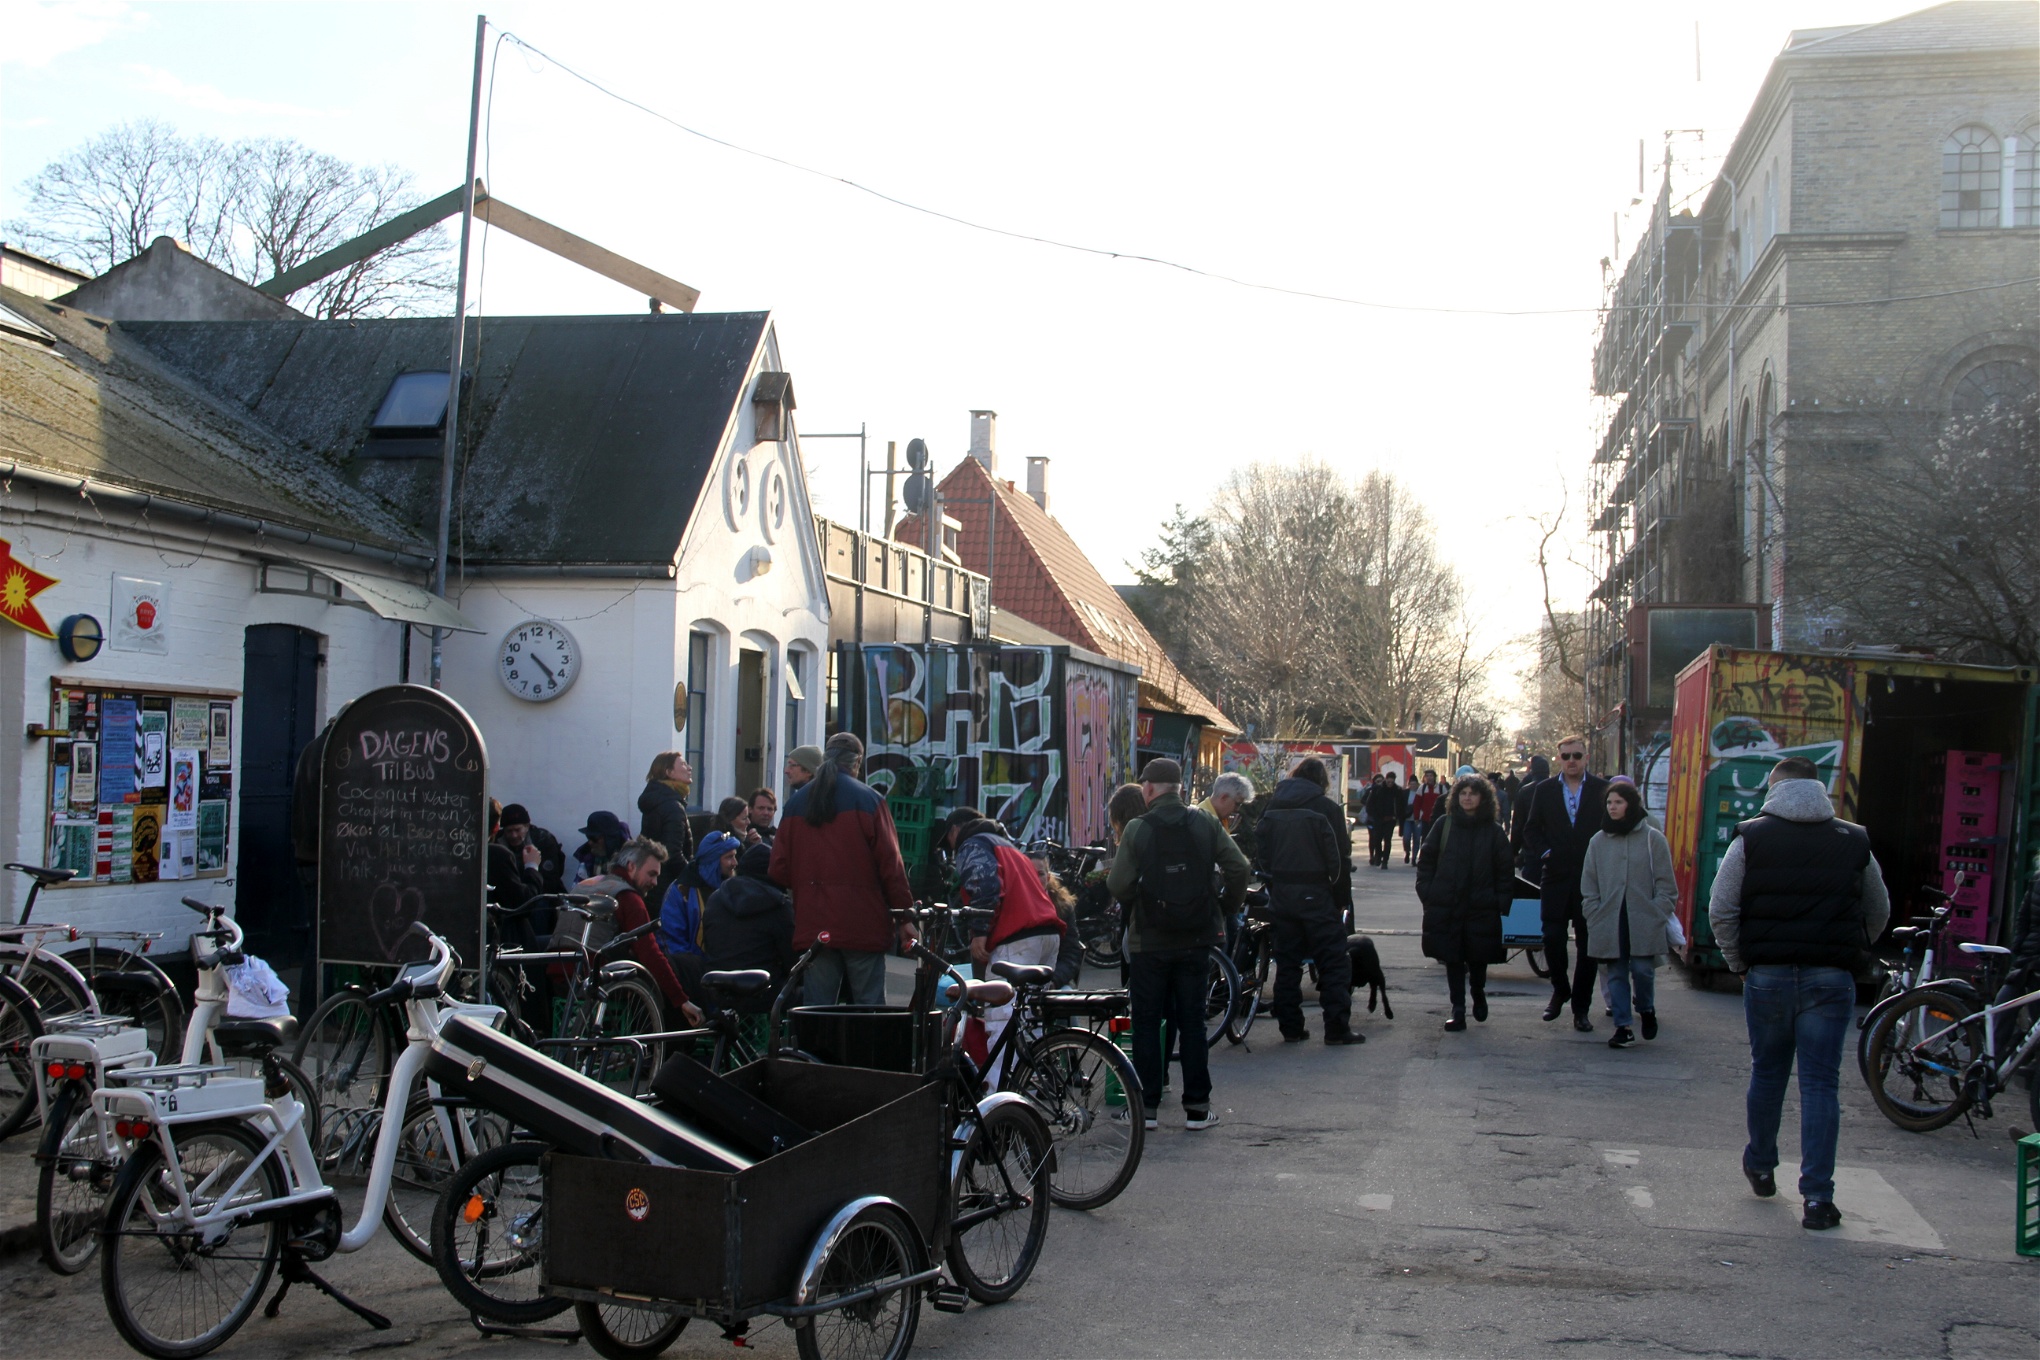 Inkøbscentralen. Fri­stads­projektet Christiania har ifrågasatts genom hela dess 46-åriga existens. Frågan är om det kommer att sluta som vilket område som helst.